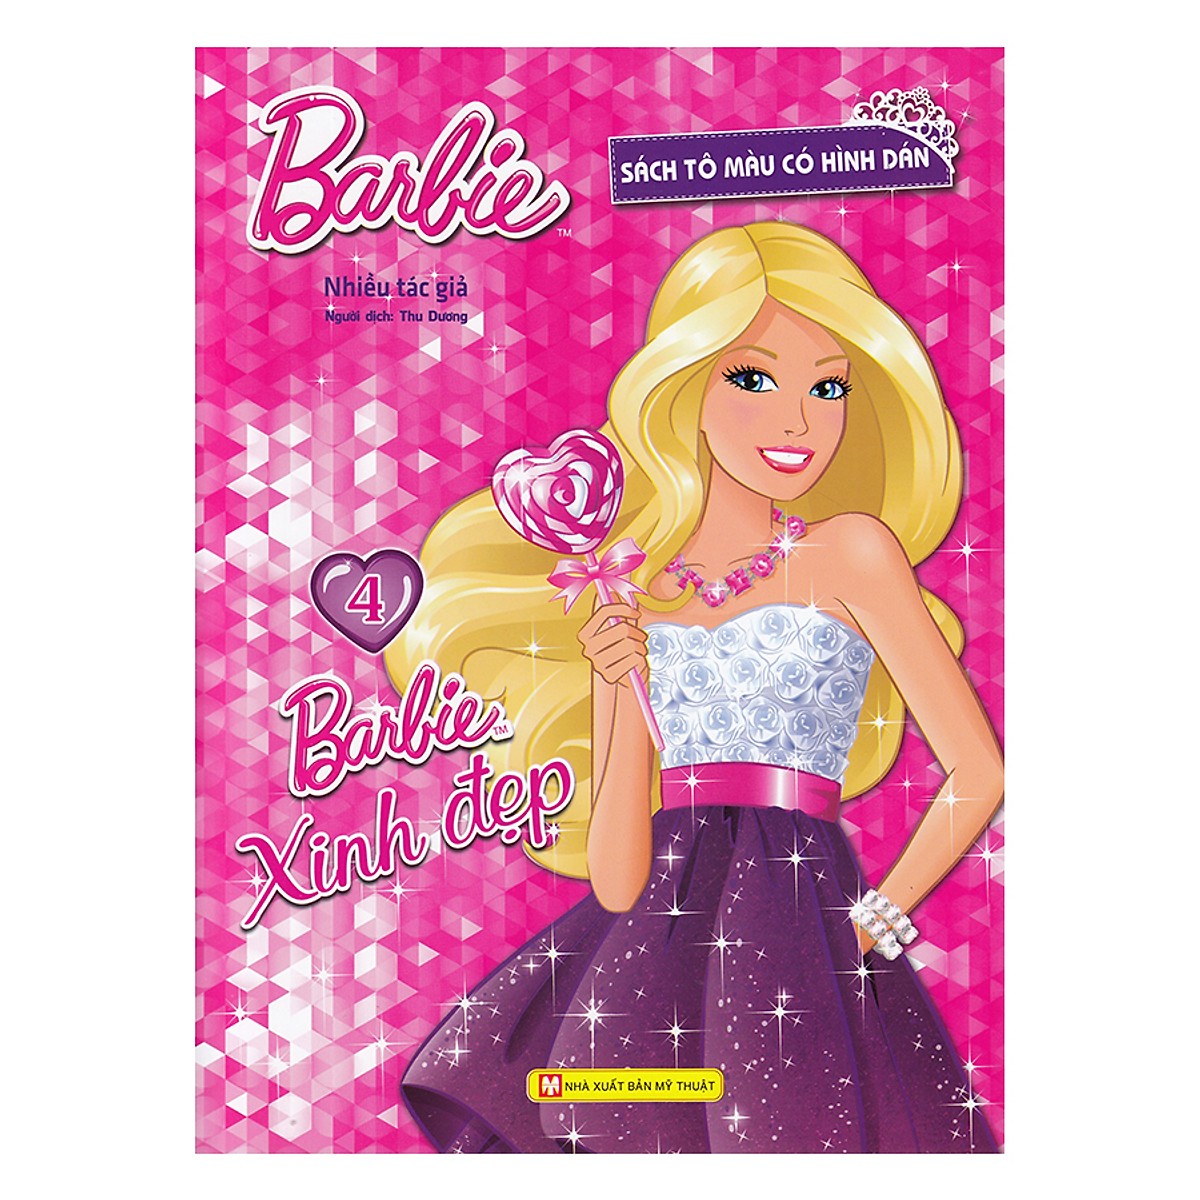 6 tô màu búp bê barbie hot nhất, bạn nên biết - Tin Tức Giáo Dục Học Tập  Tiny